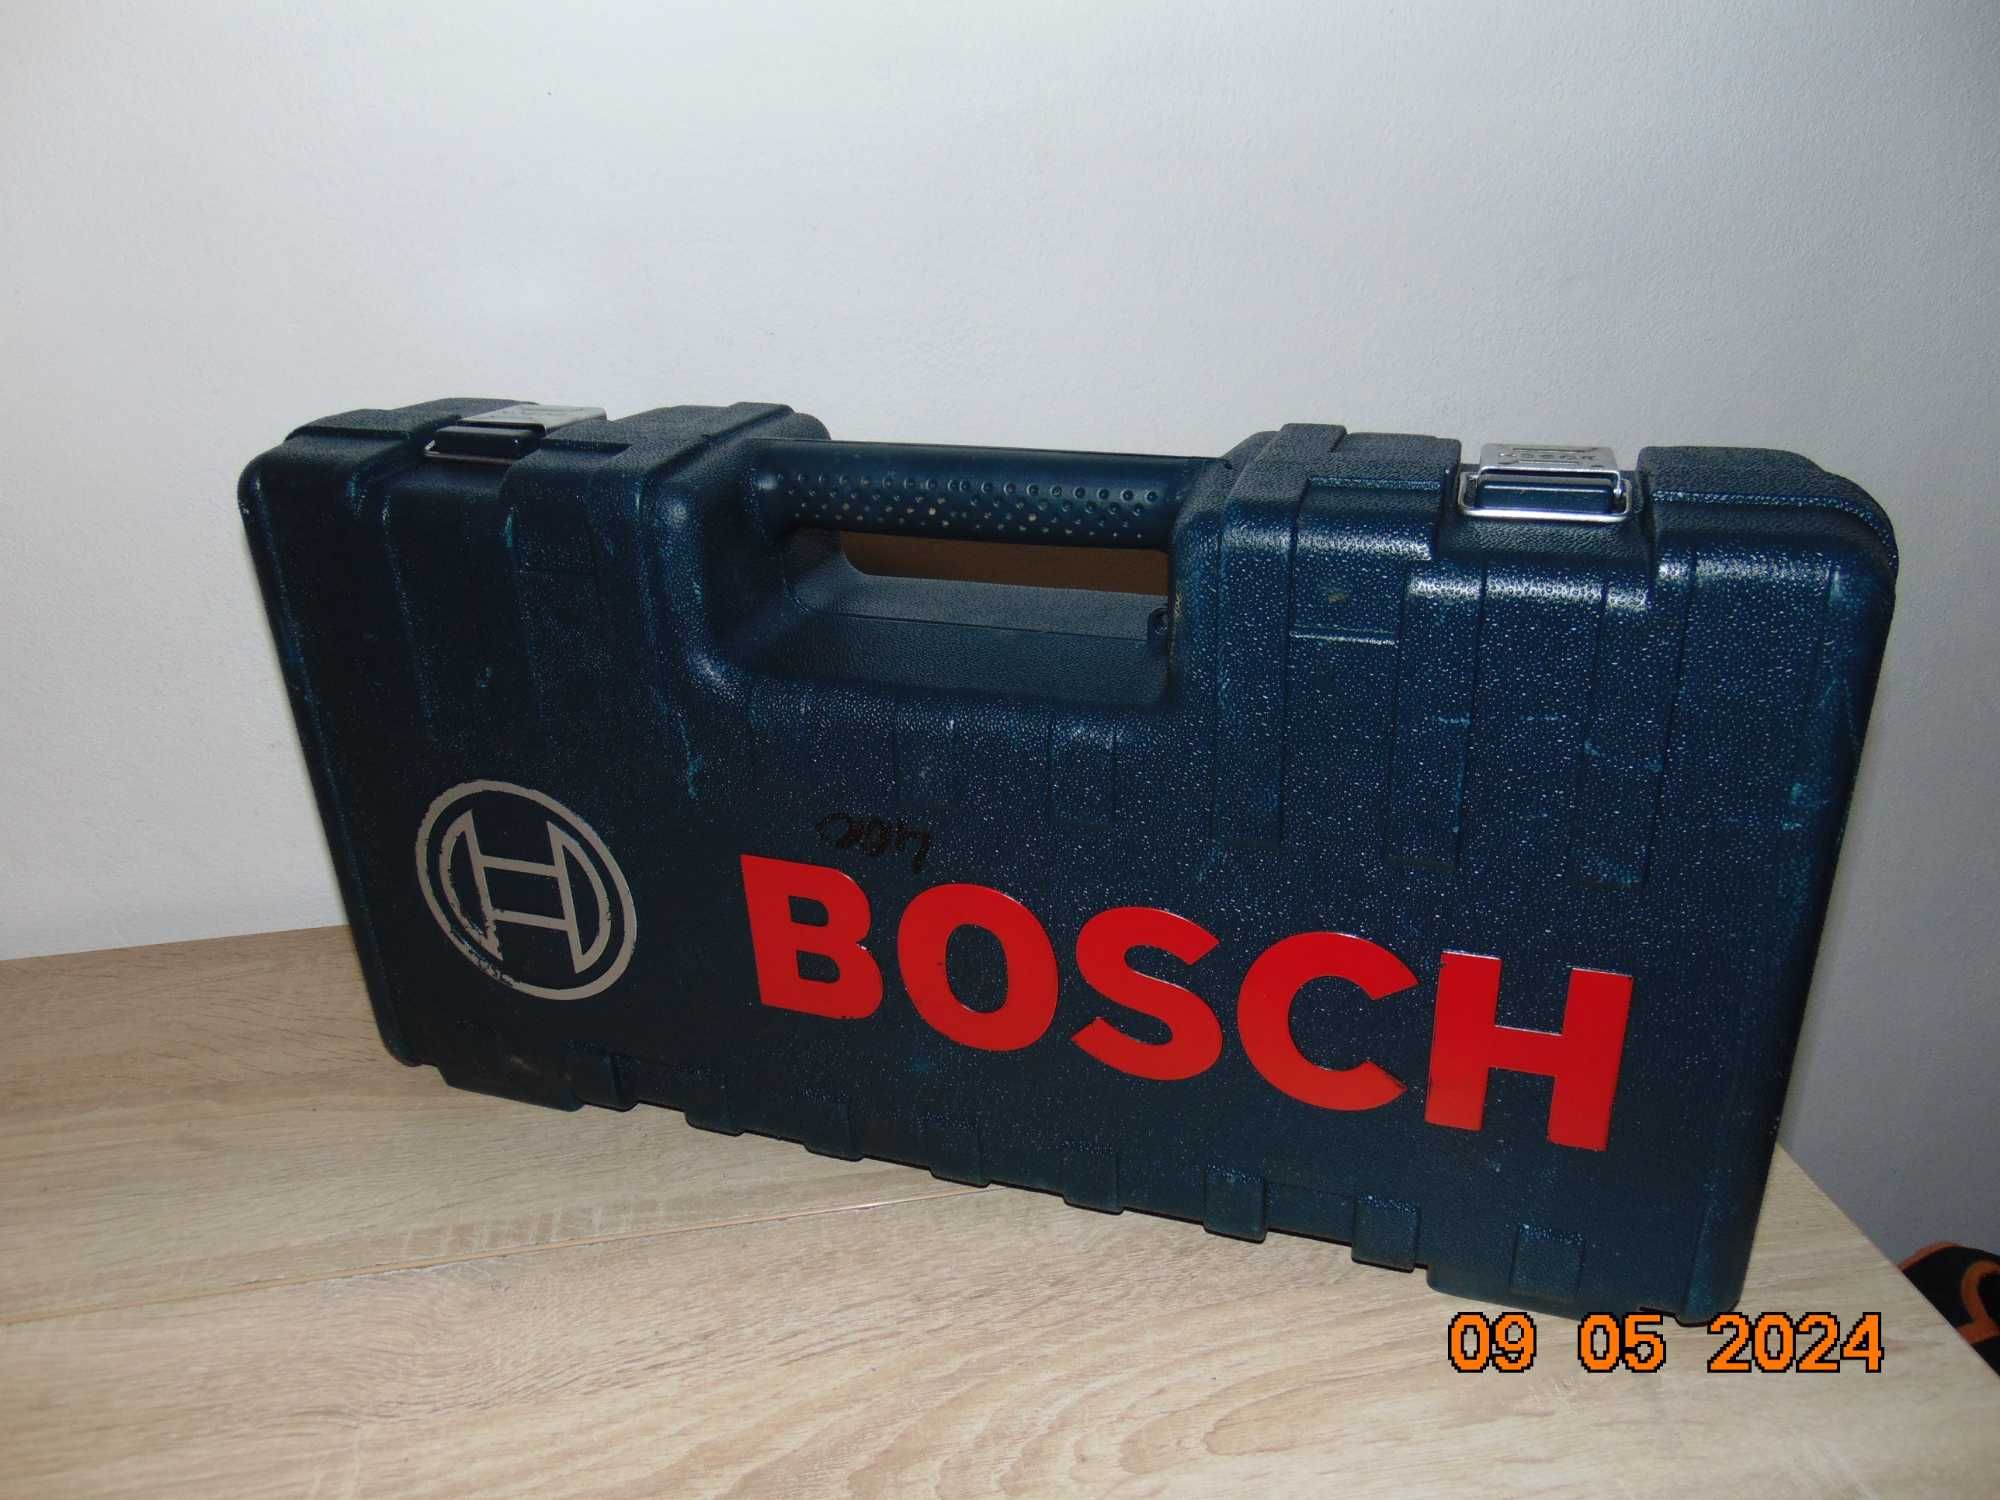 Bosch GSA 1100E ferastrau sabie 2022